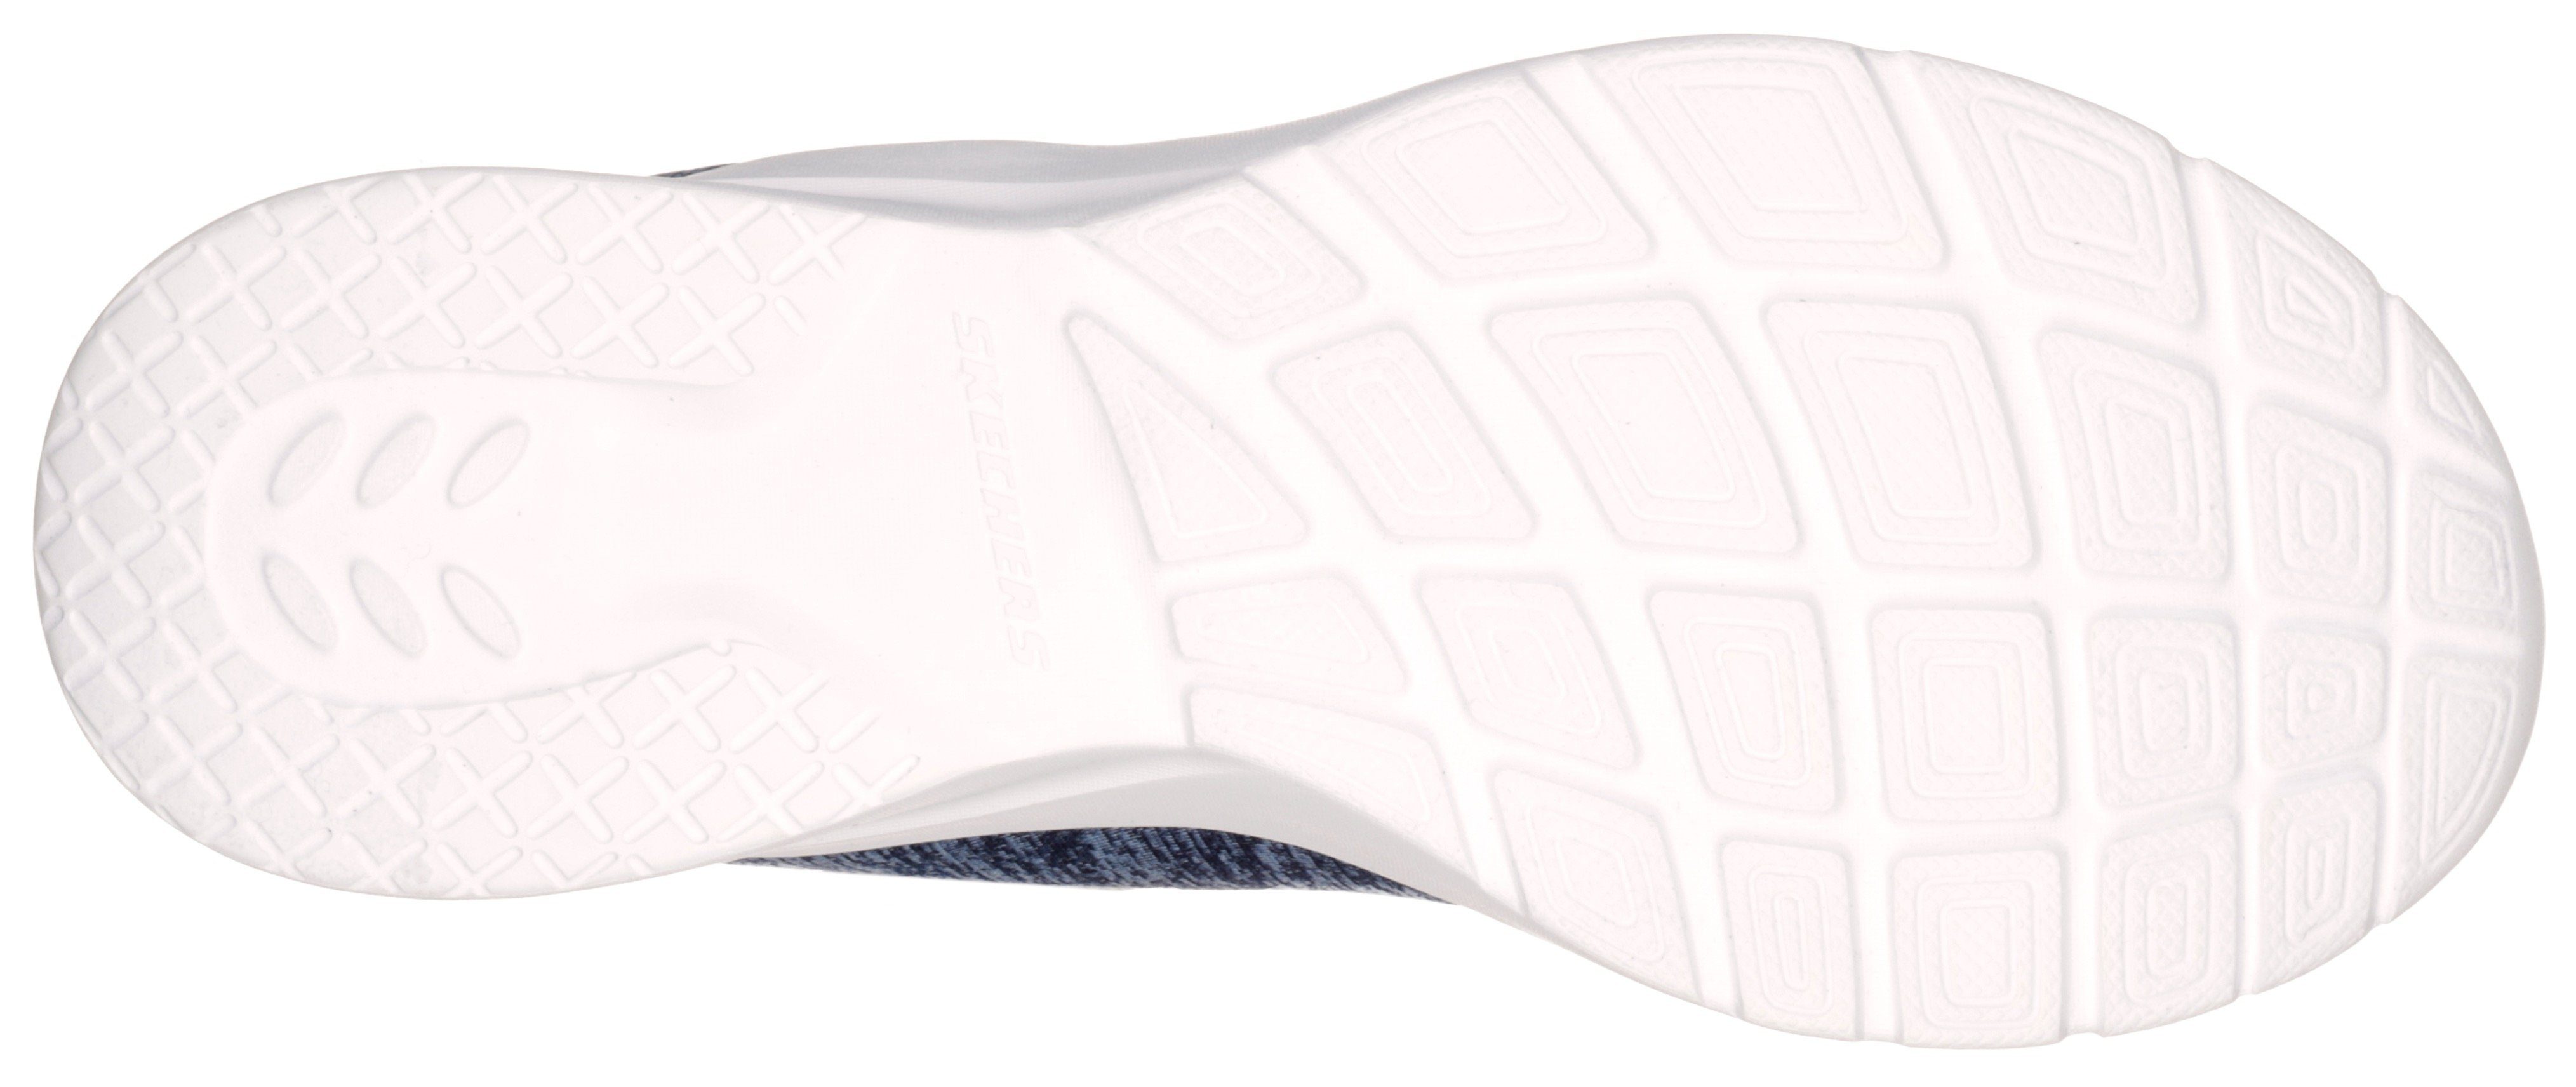 Skechers DYNAMIGHT 2.0-IN A geeignet FLASH Maschinenwäsche für navy-rosa Slip-On Sneaker